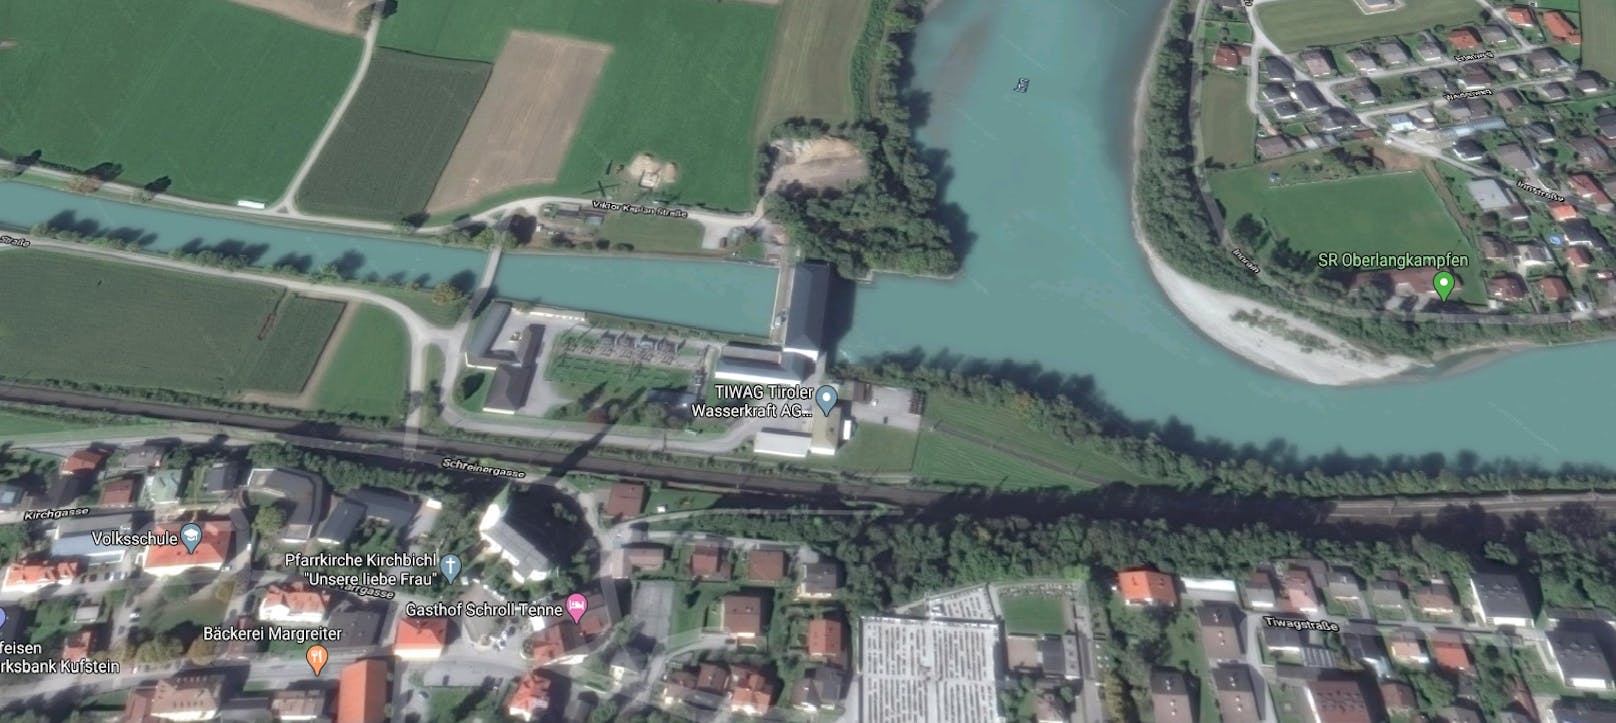 Männliche Leiche bei Tiroler Kraftwerk gefunden